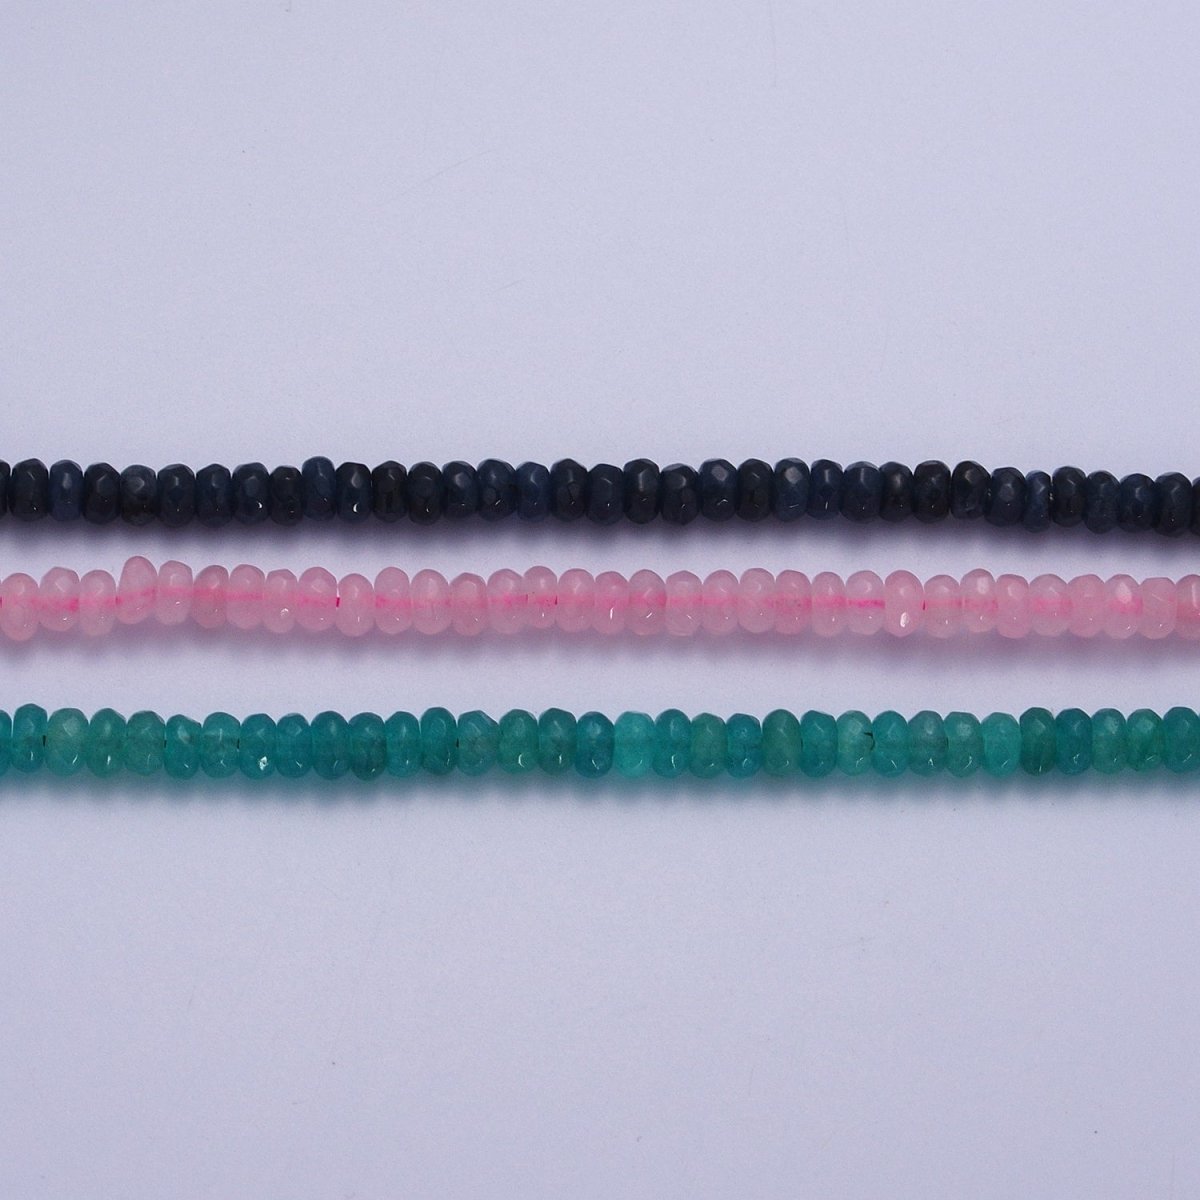 16 Inch Rhondelle 5mm Natural Stone Beads Handmade Necklaces | WA-1438 - WA-1443 WA-1480 - WA-1485 Clearance Pricing - DLUXCA